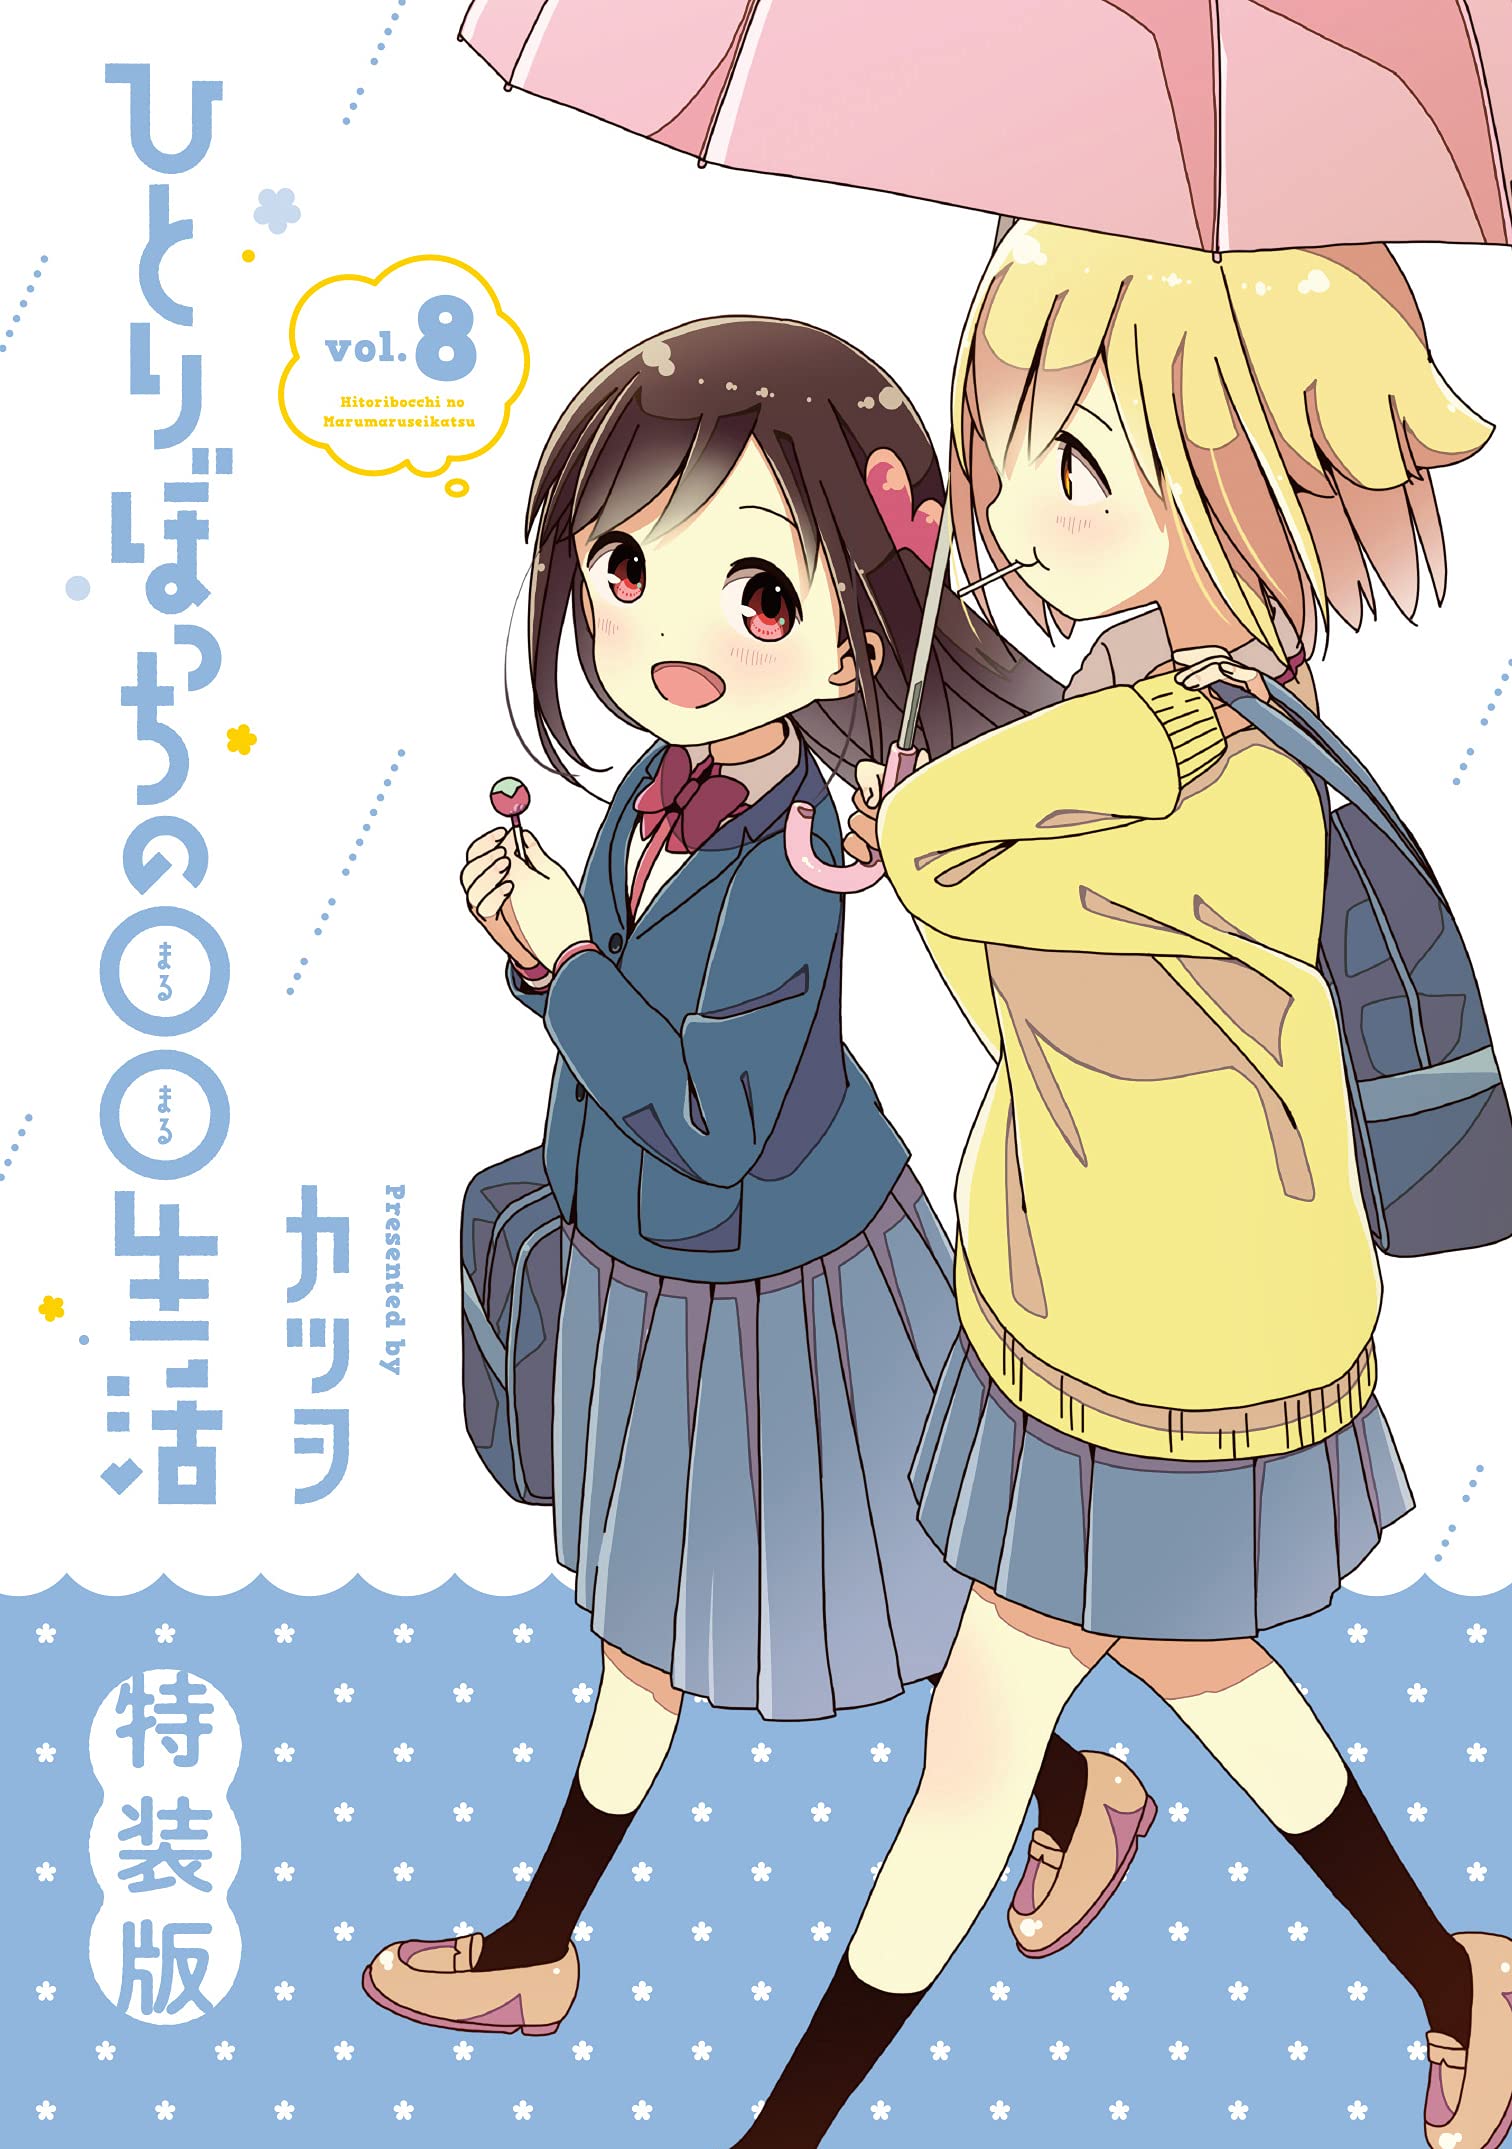 El manga Hitoribocchi no Marumaru Seikatsu revela los detalles de su  volumen final — Kudasai